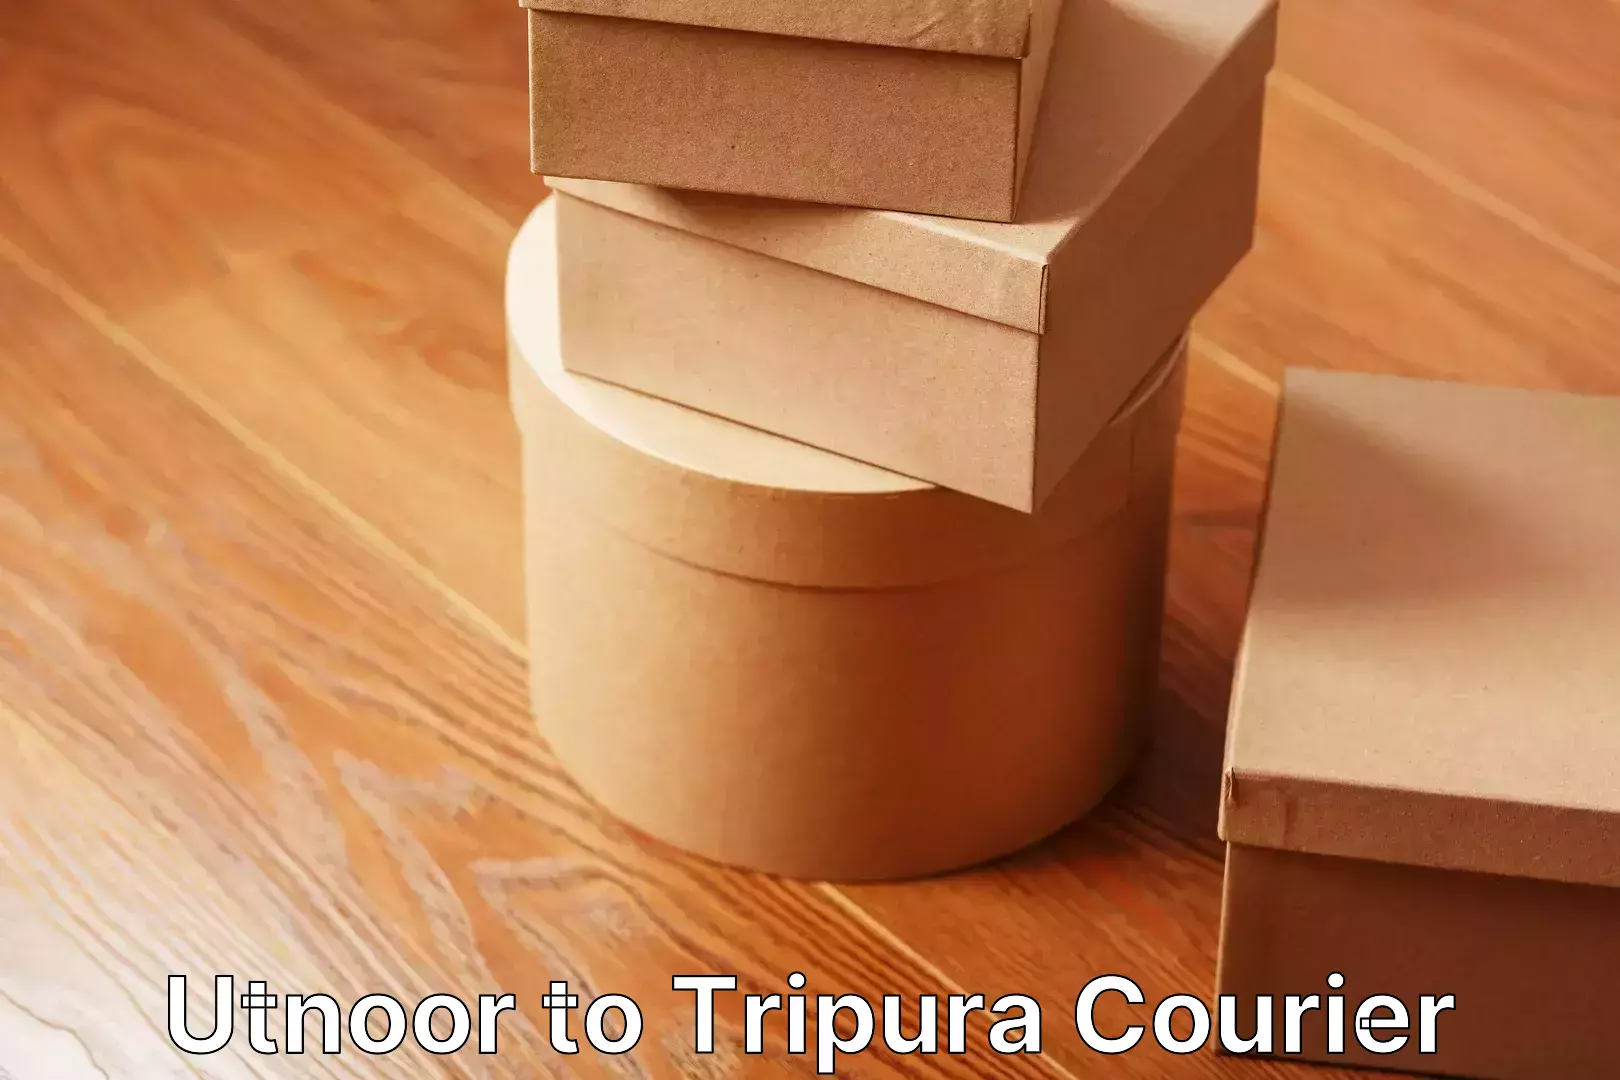 Residential furniture movers Utnoor to Tripura